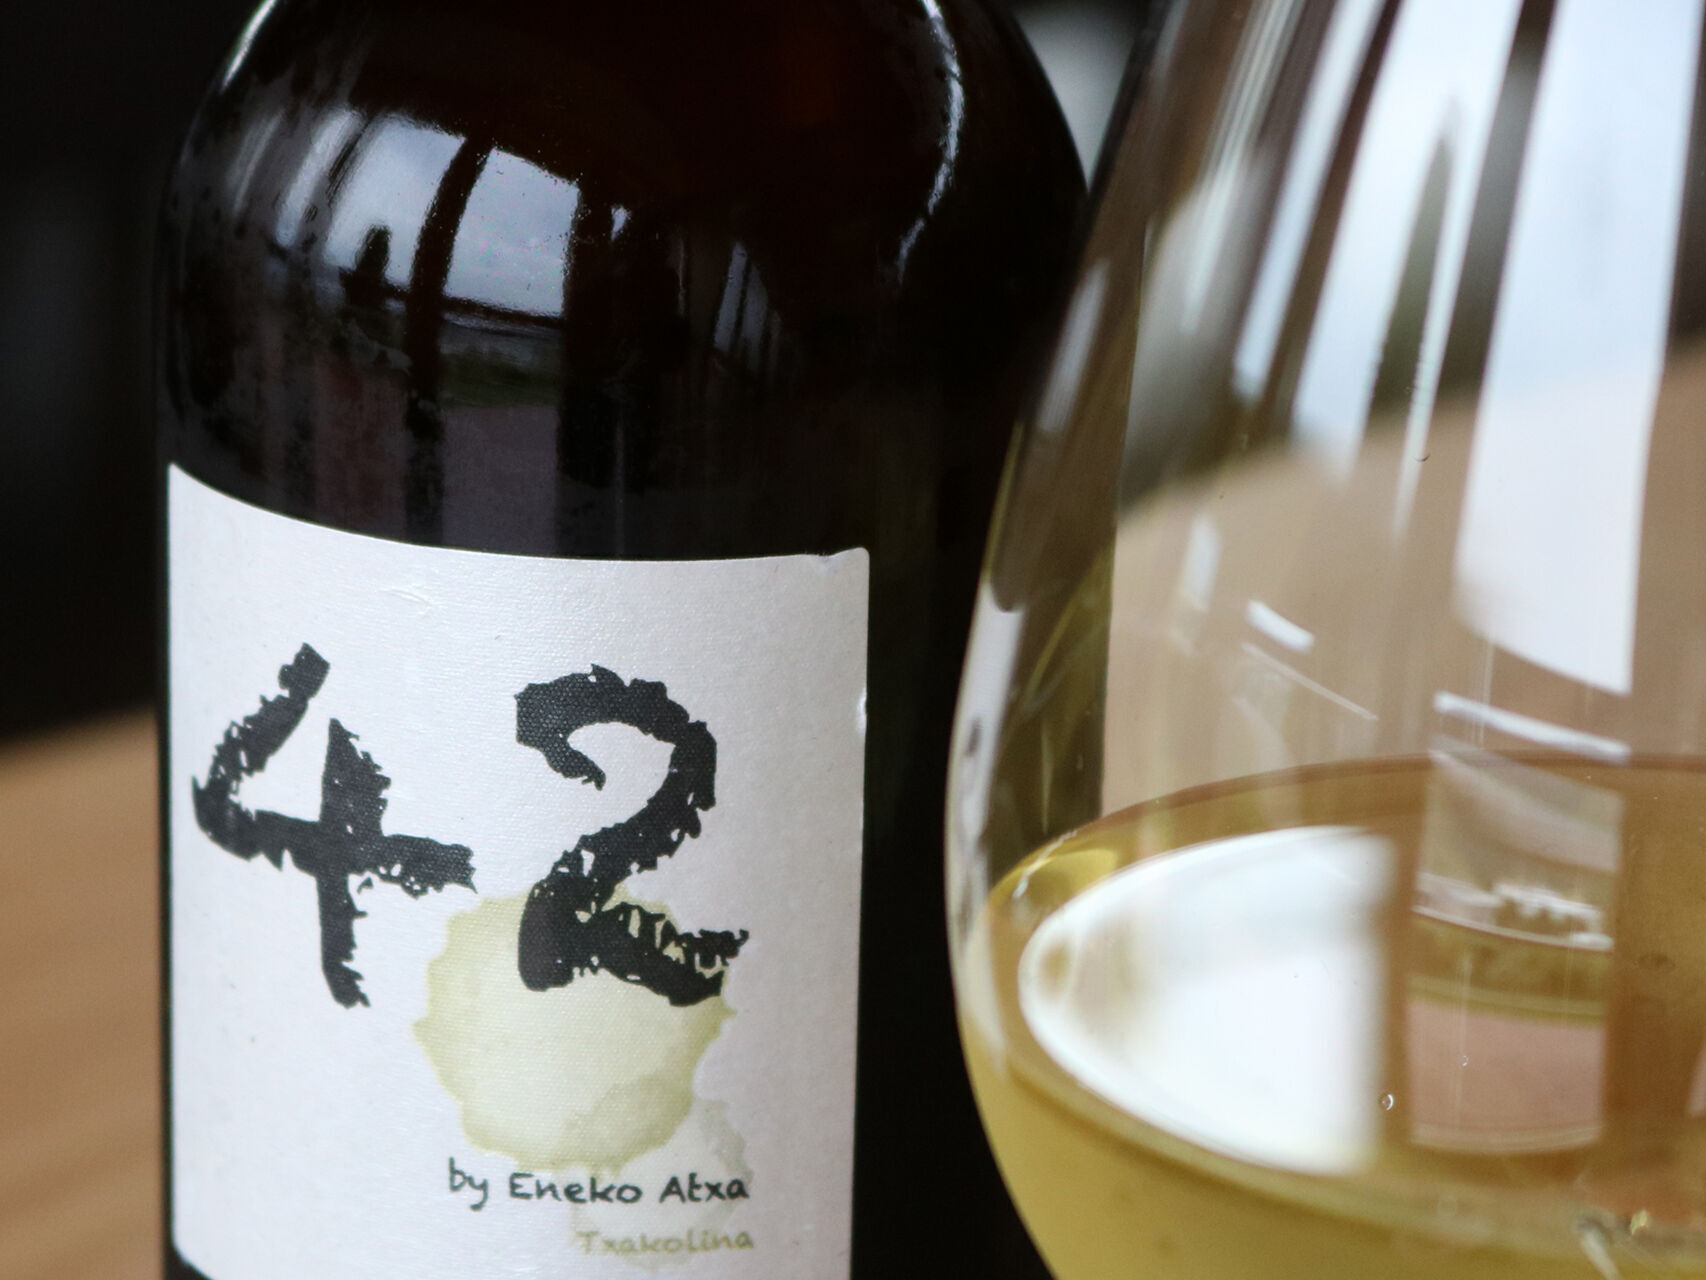 42 by Eneko Atxa, mejor vino blanco en el Concurso Mundial de Bruselas.